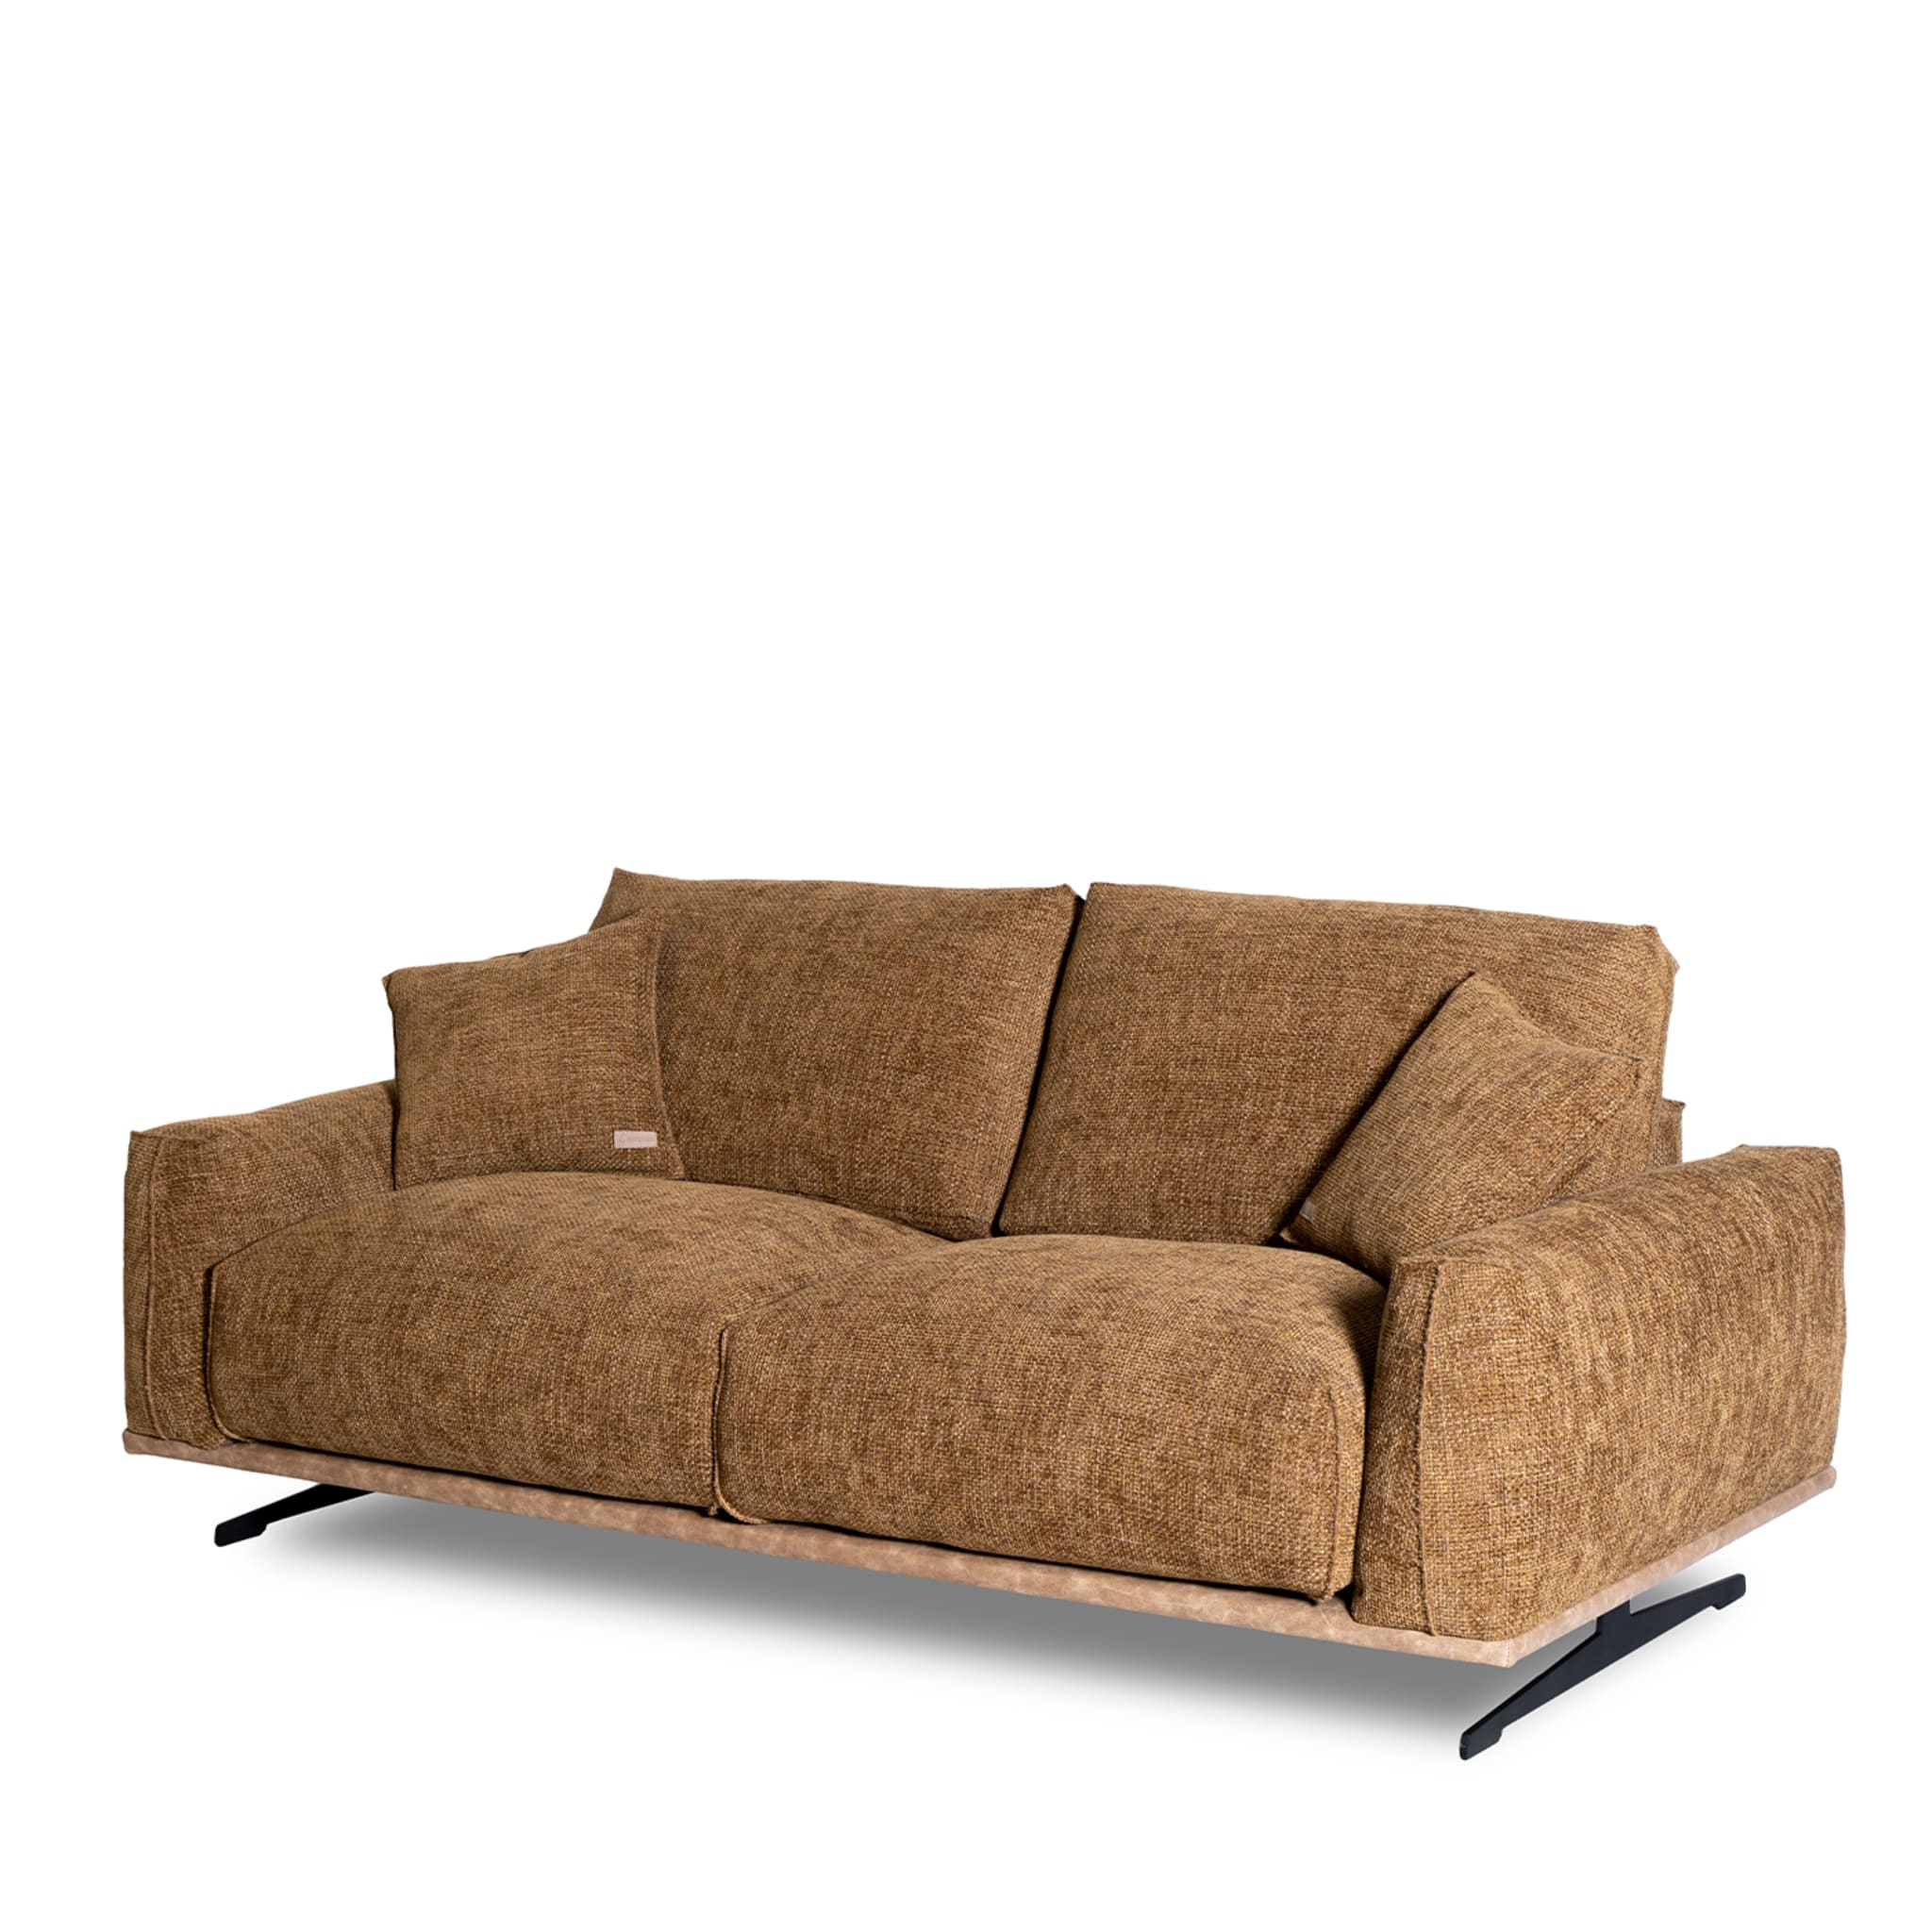 Boboli 2-Seater Sofa by Marco and Giulio Mantellassi - Alternative view 1